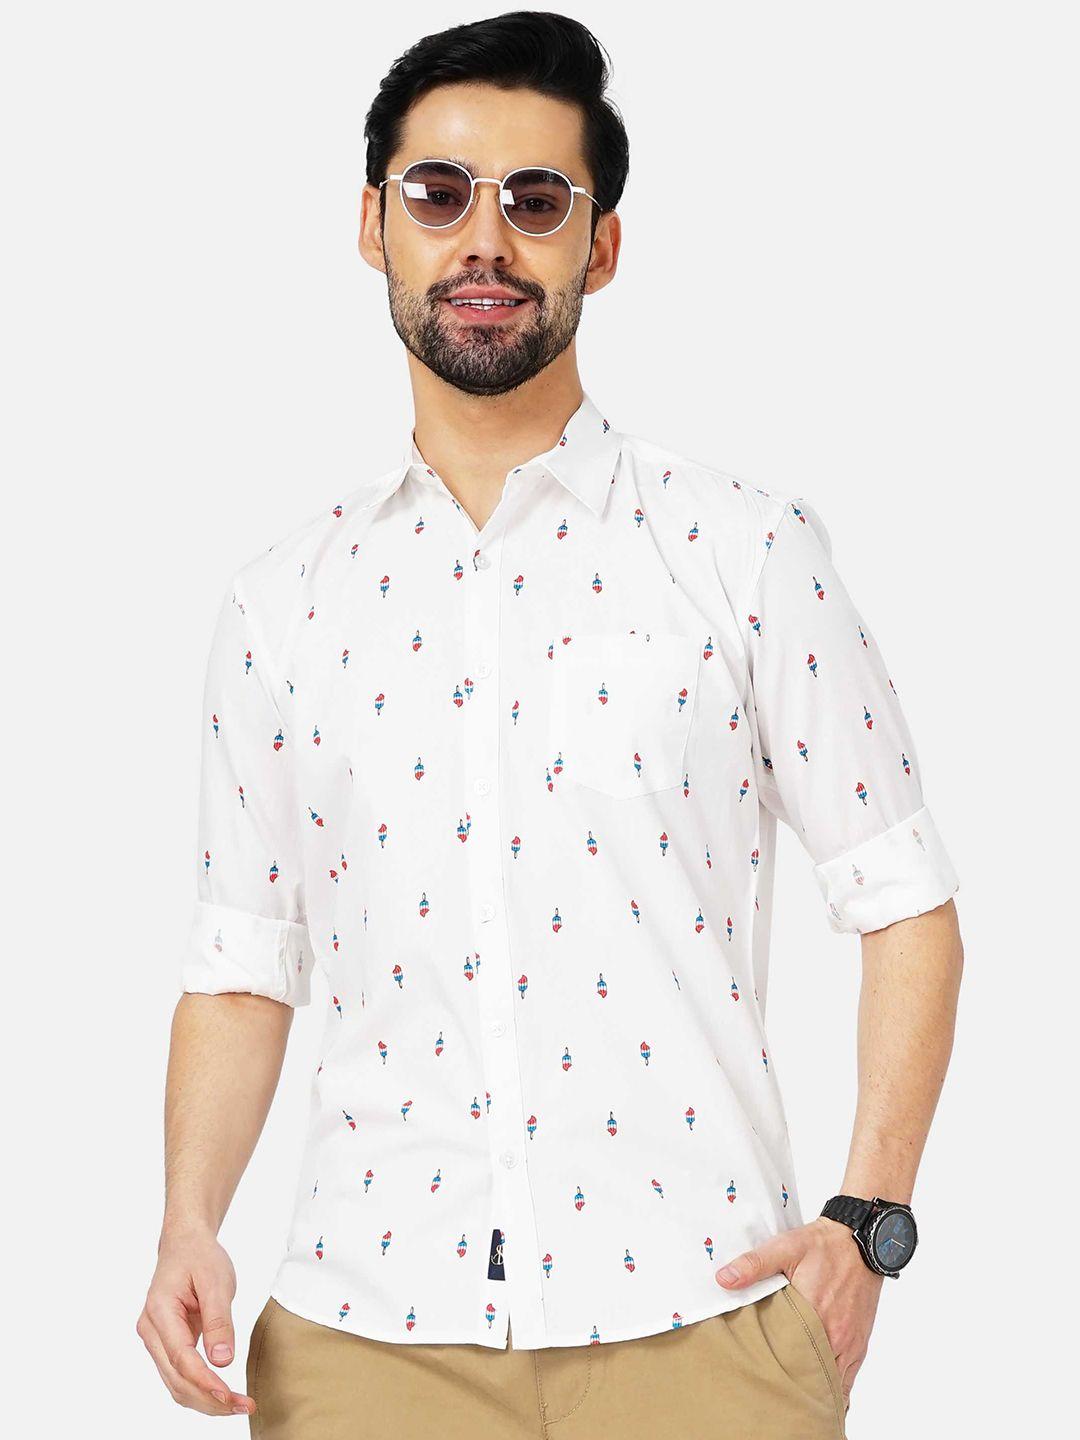 soratia-men-slim-fit-floral-printed-casual-shirt